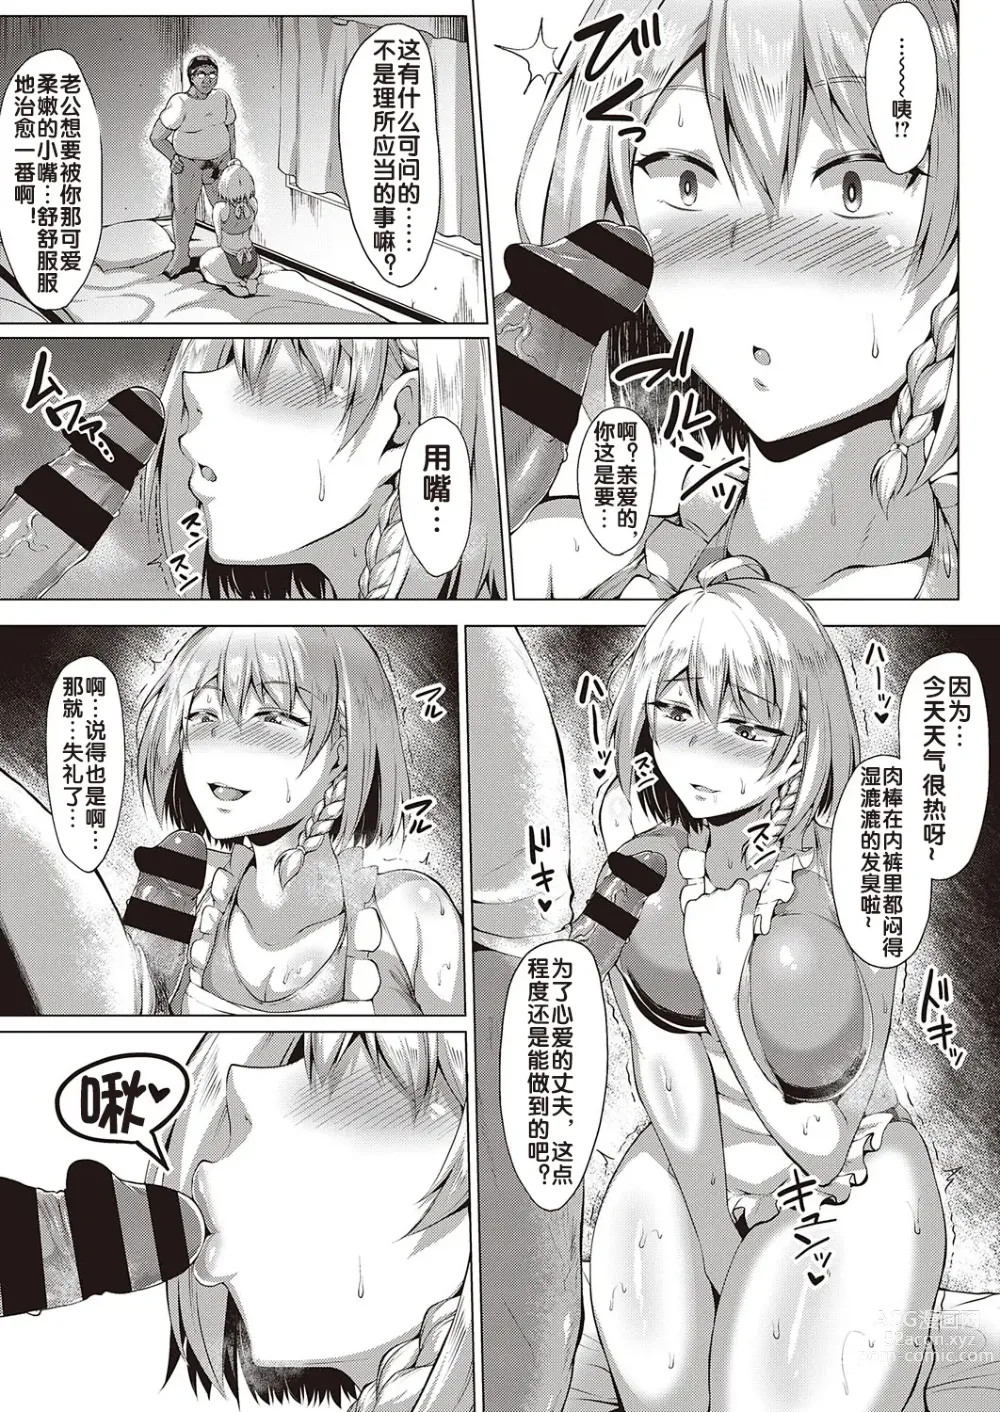 Page 14 of manga Kugutsu Appli